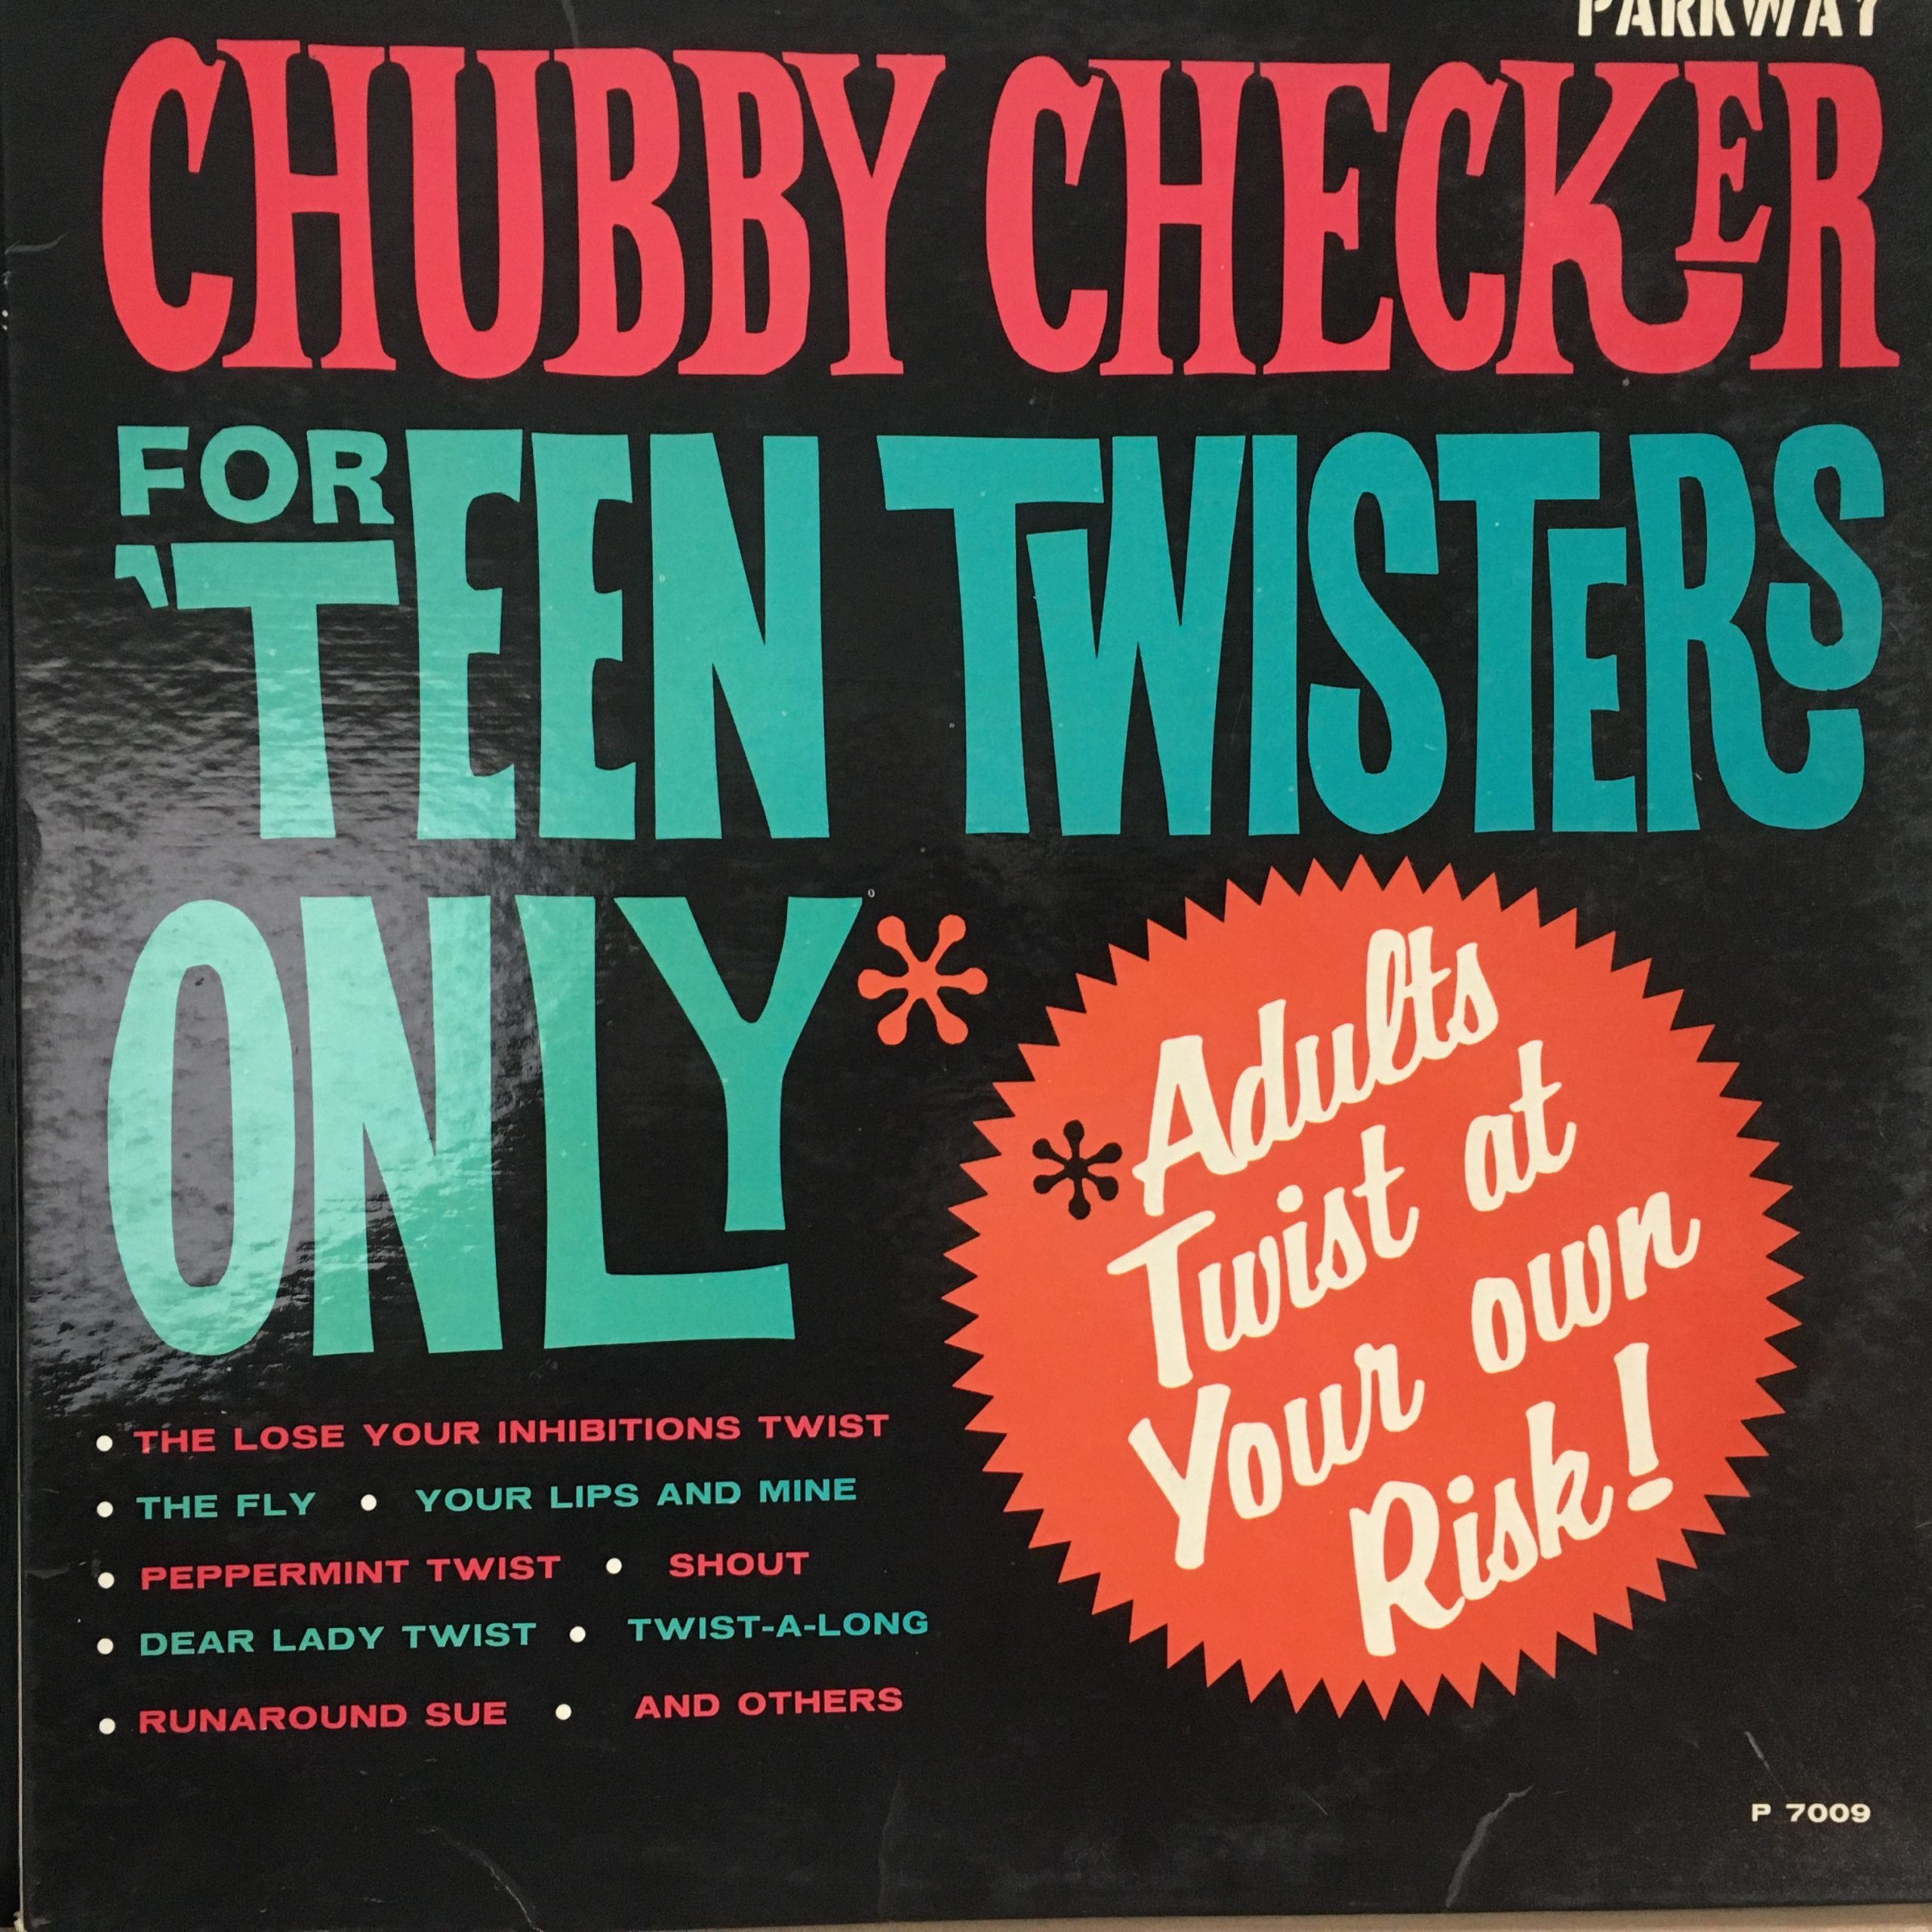 Chubby Checker - Lets Twist again обложка. Lets Twist again. Let's Twist again (Remastered) chubby Checker – Let's Twist again.